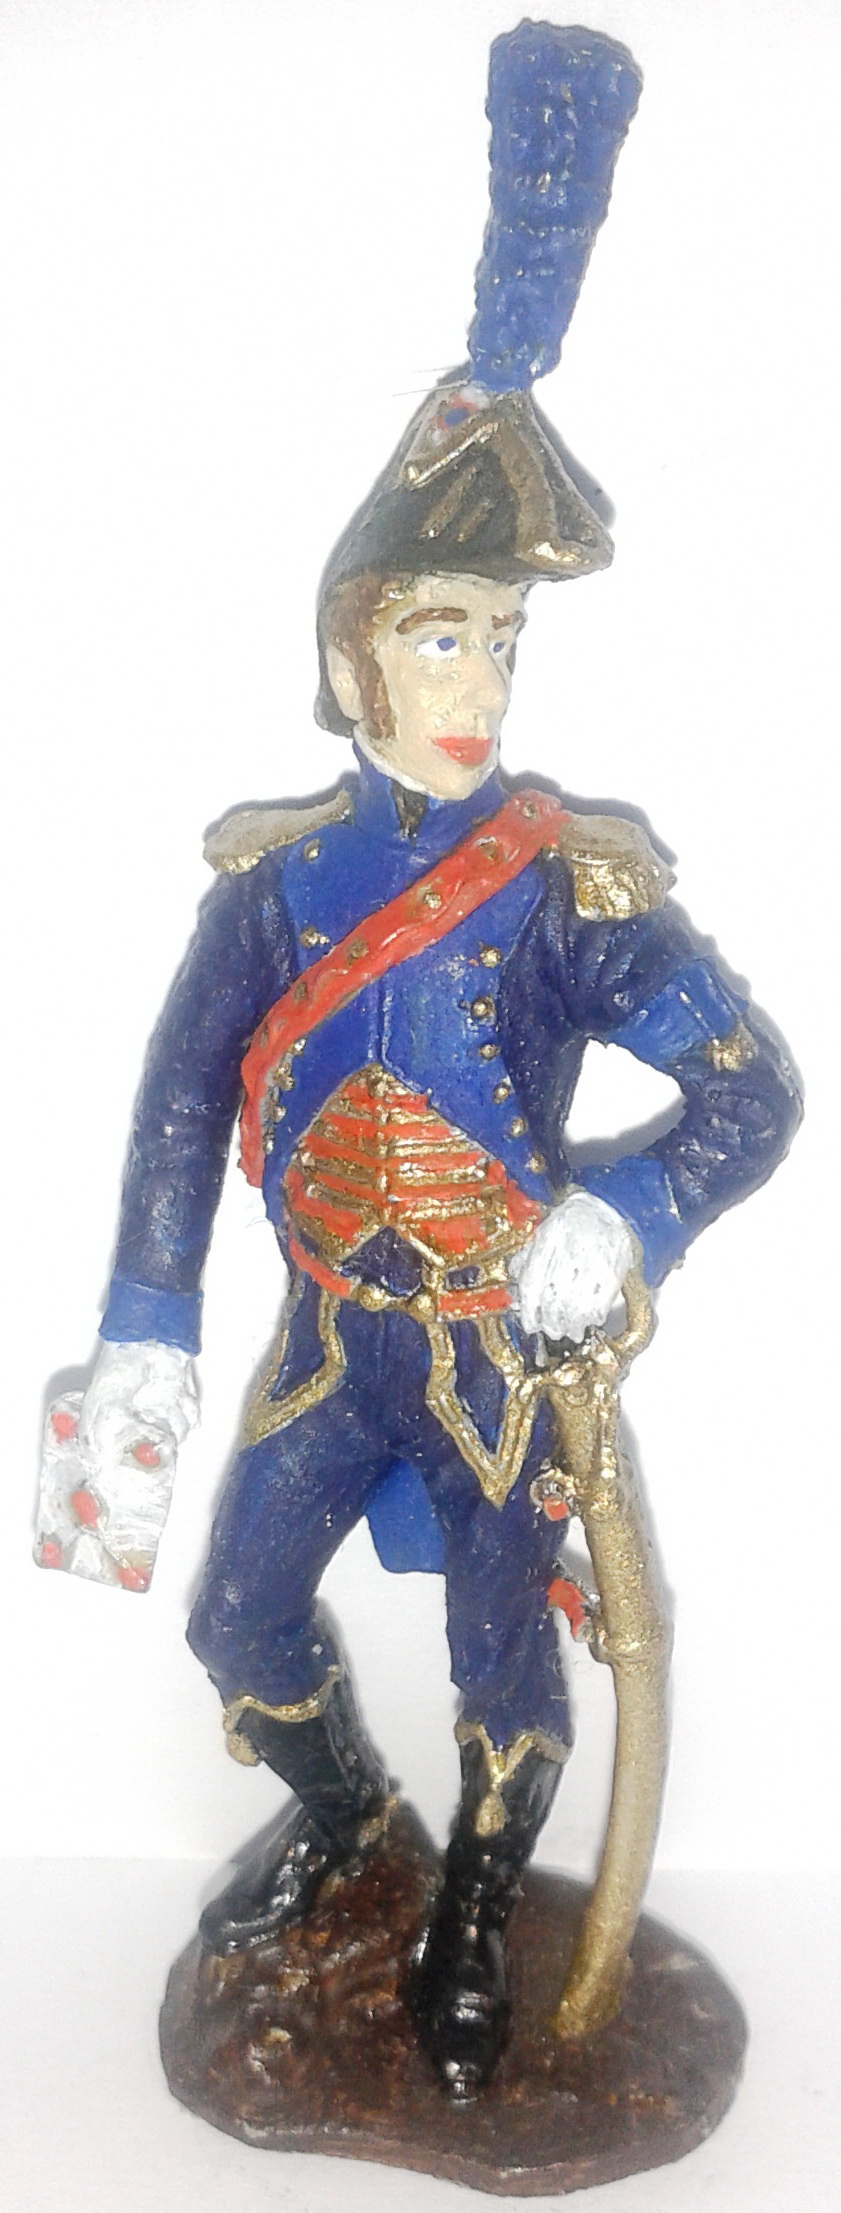 Історична мініатюра. "Ад'ютант у парадній формі. Перша Французька імперія. 1804-1815"